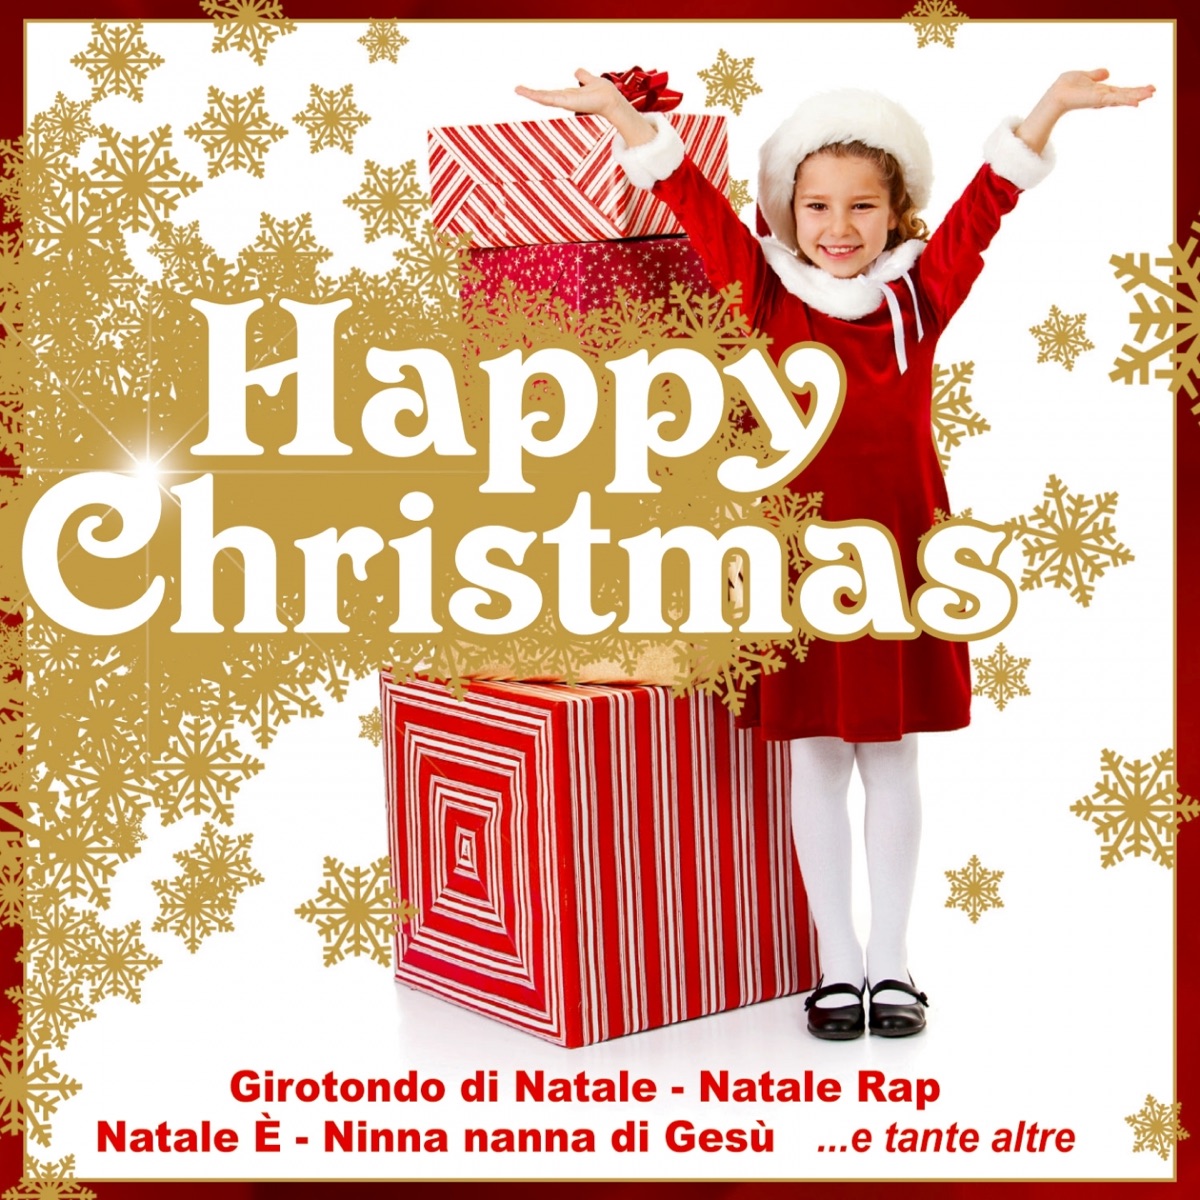 Il Natale dei bambini (Versione speciale con basi e booklet con i testi) -  Album di Le mele canterine - Apple Music